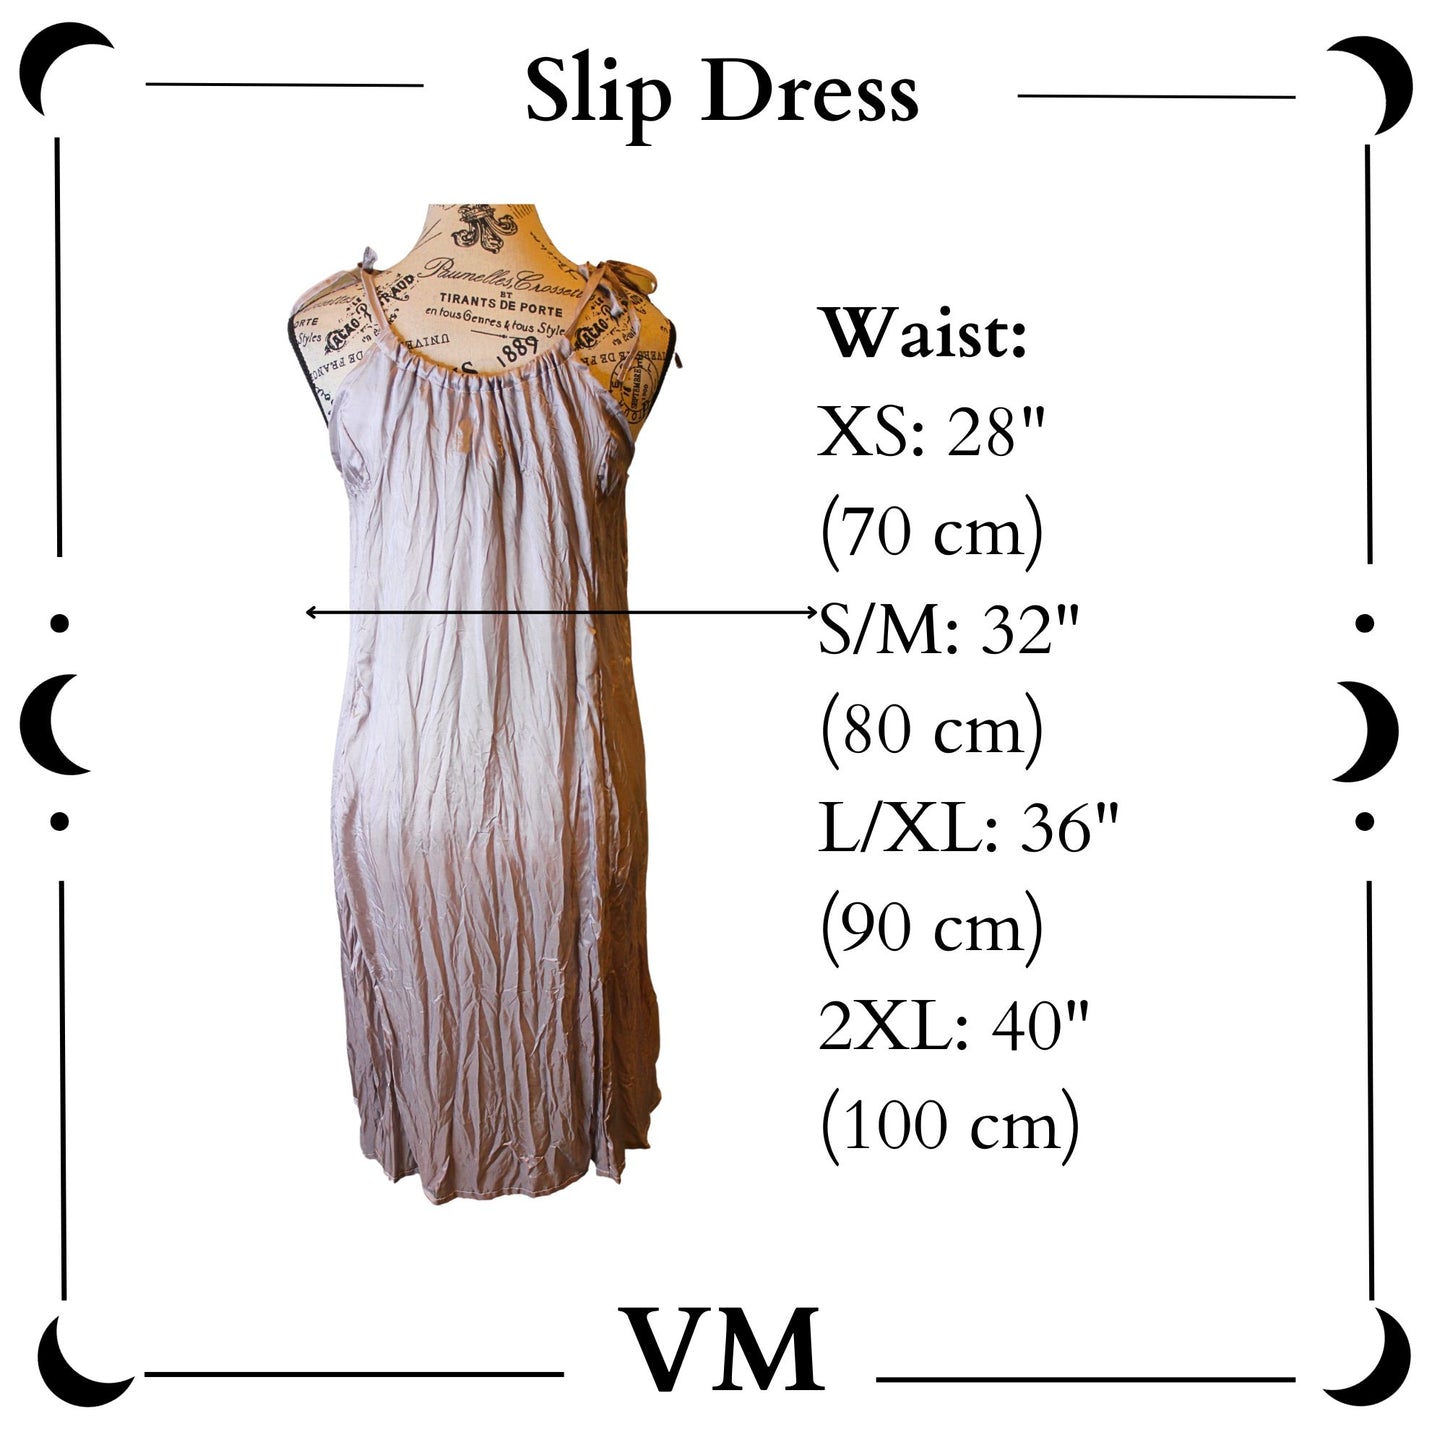 The VM Slip Dress